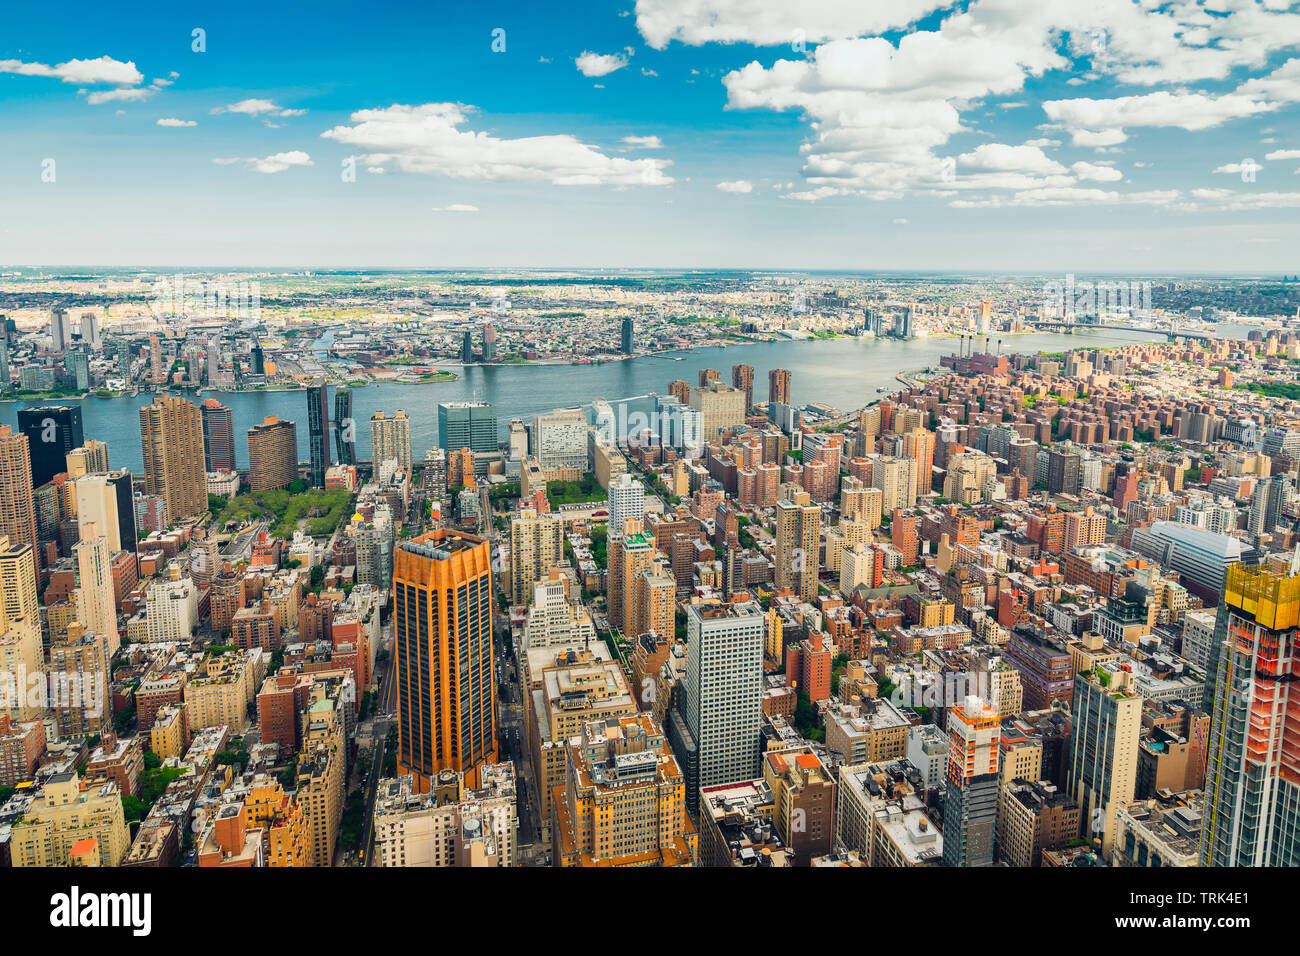 Cùng khám phá view tòa nhà cao New York từ trên cao. Không gian mênh mông của thành phố được phản chiếu trung thực trên từng tấm hình. Cảm nhận được vẻ đẹp của những tòa nhà độc đáo và kiến trúc độc đáo trong hình ảnh liên quan. Bạn sẽ không thể rời mắt khỏi những góc chụp này!